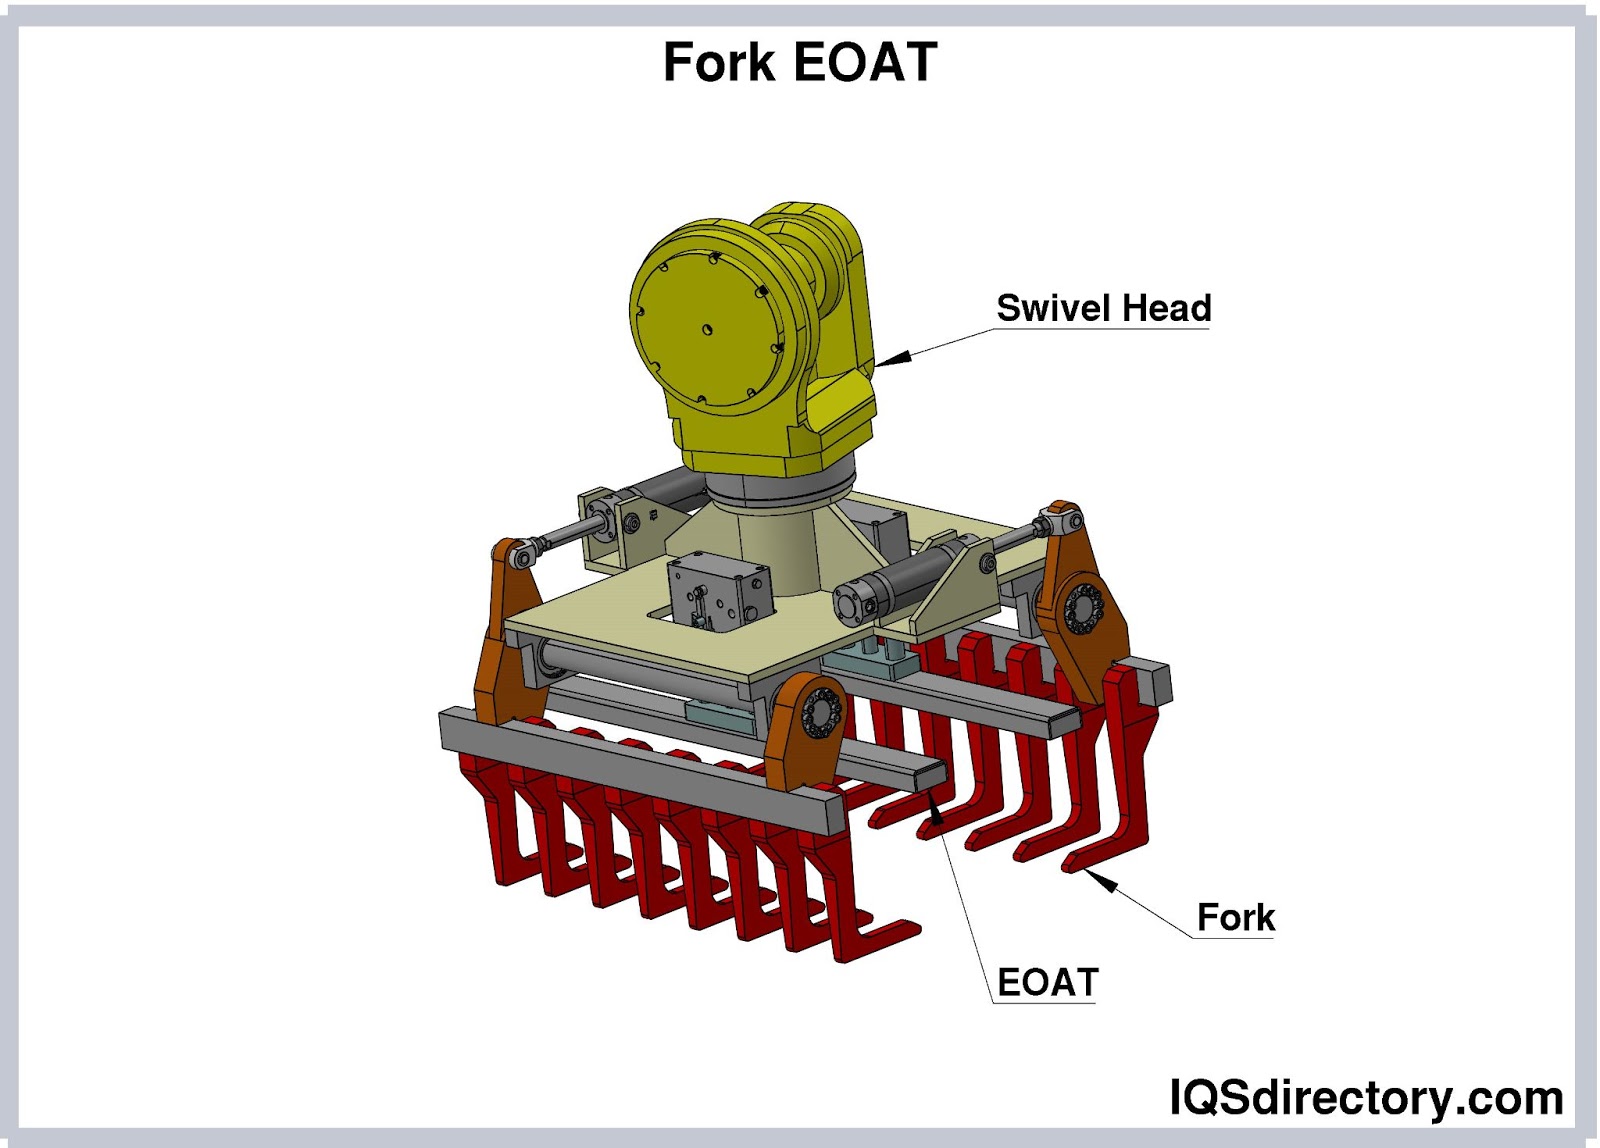 Fork EOAT